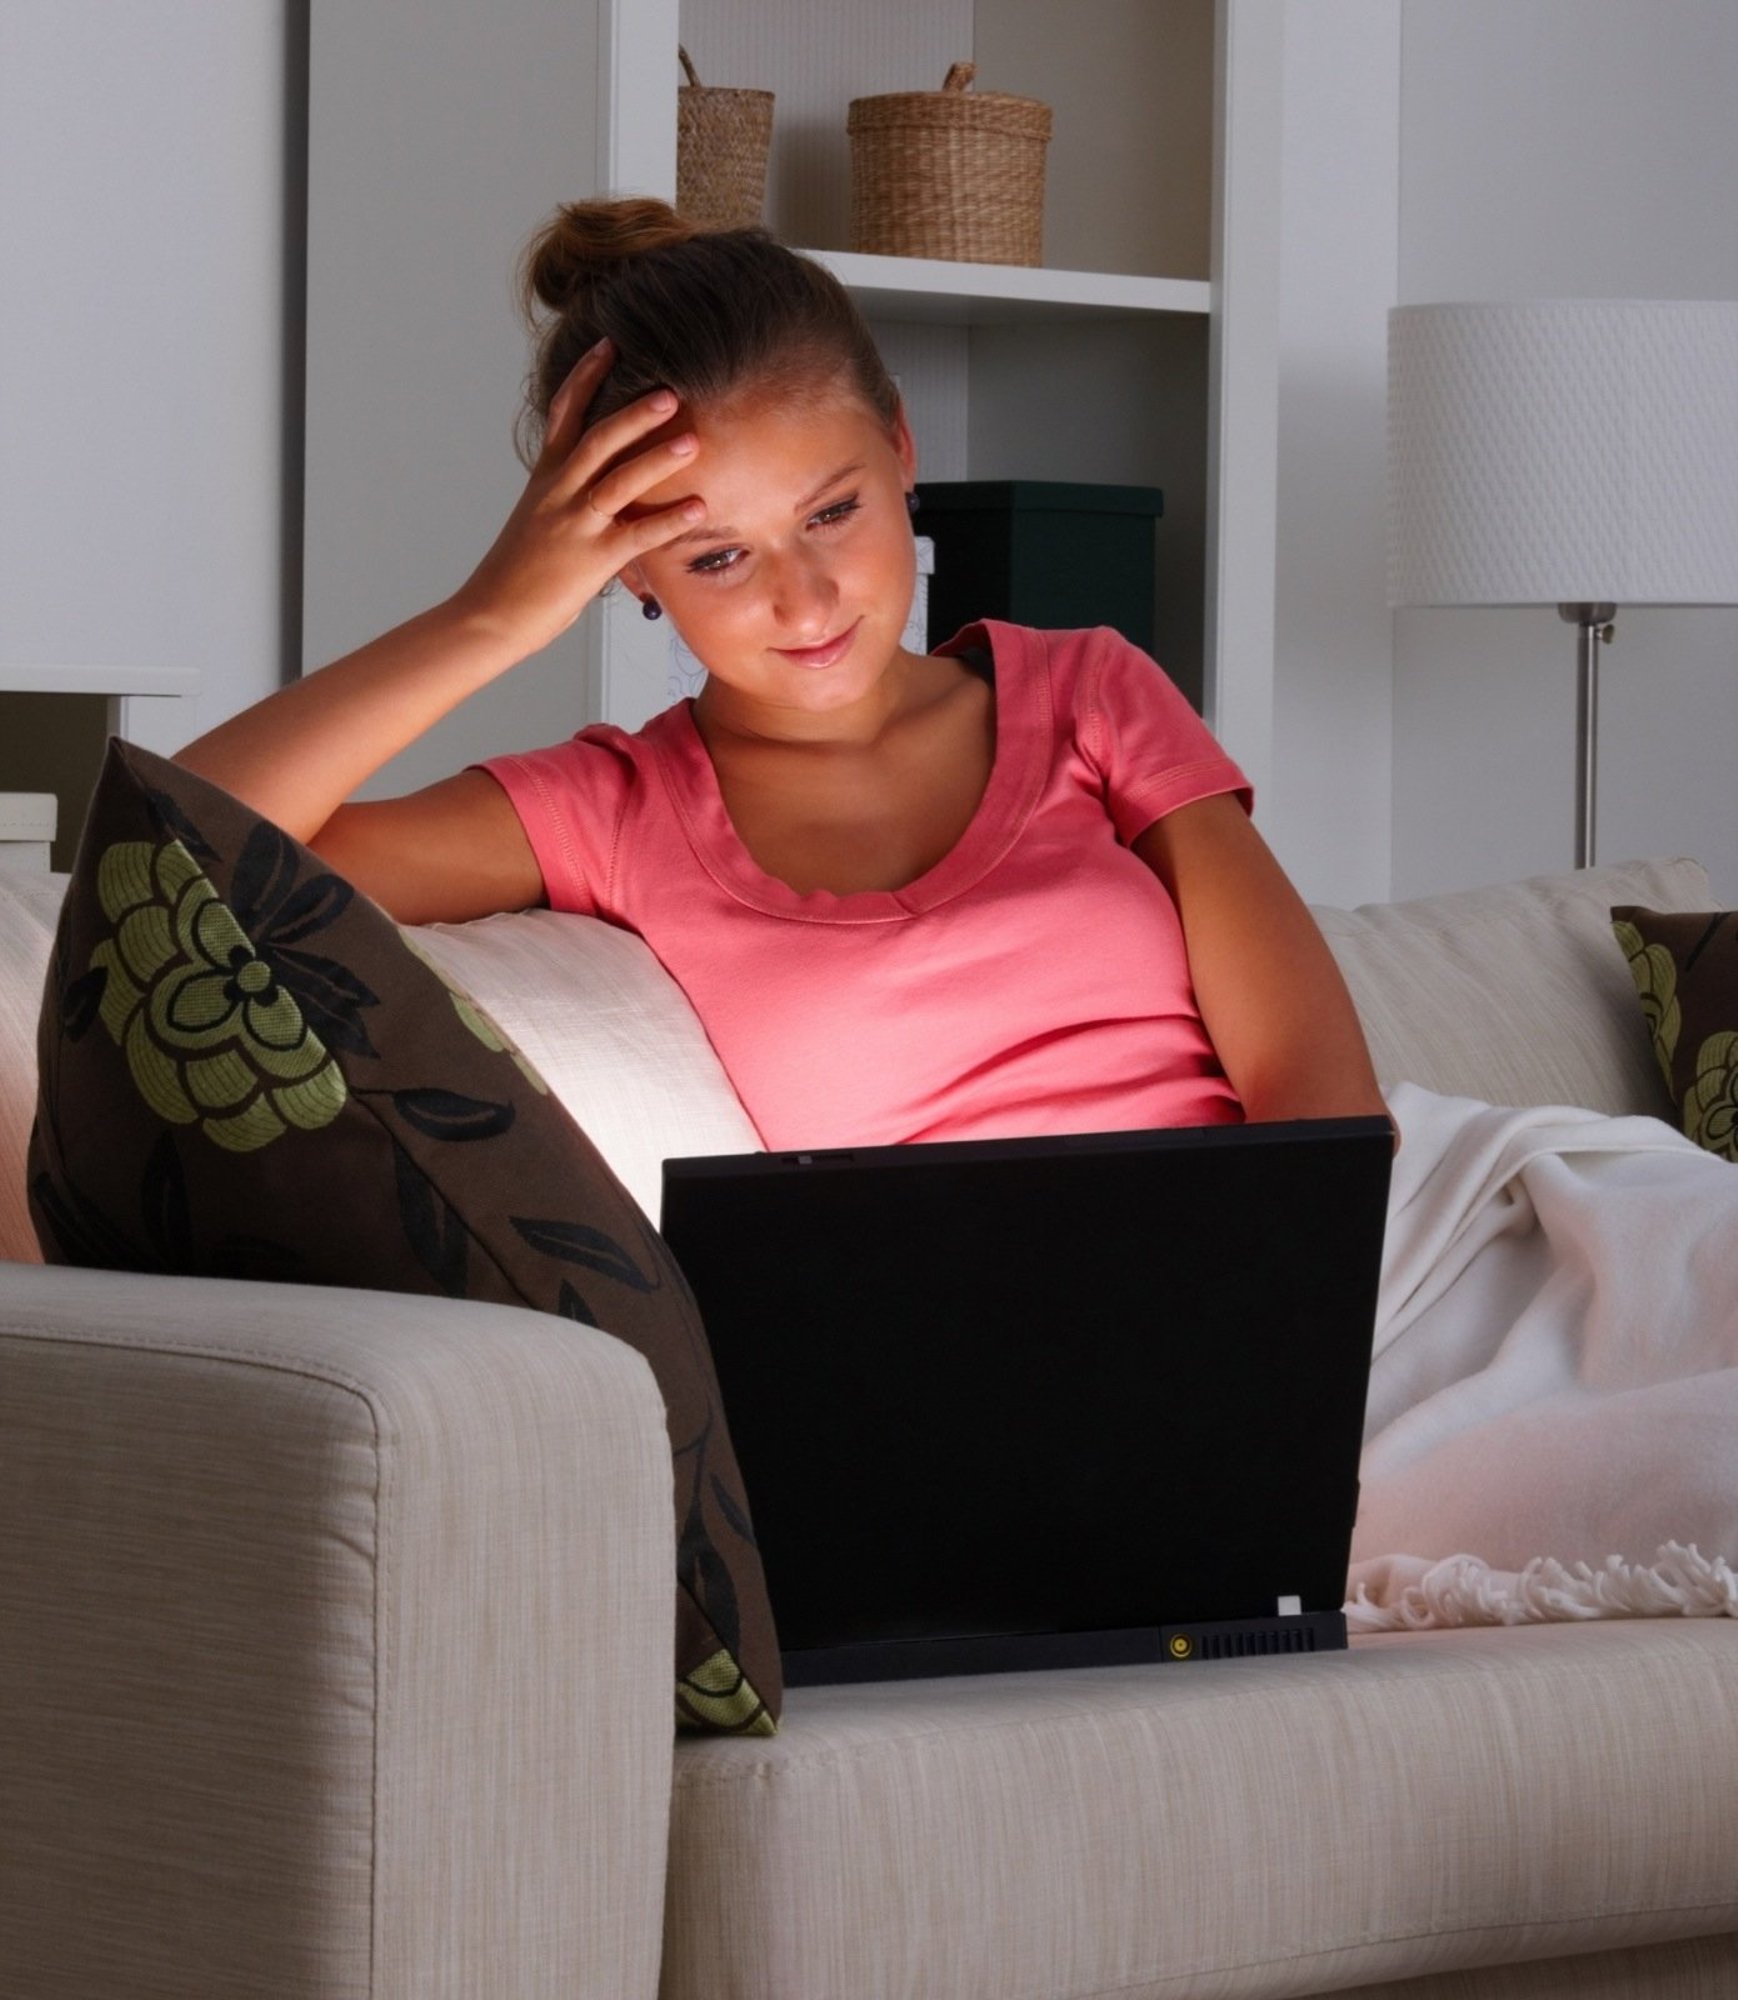 Домашнее подросток маме. Девушка за ноутбуком. Девушка сидит за компьютером. Подросток и компьютер. Подросток с ноутбуком.